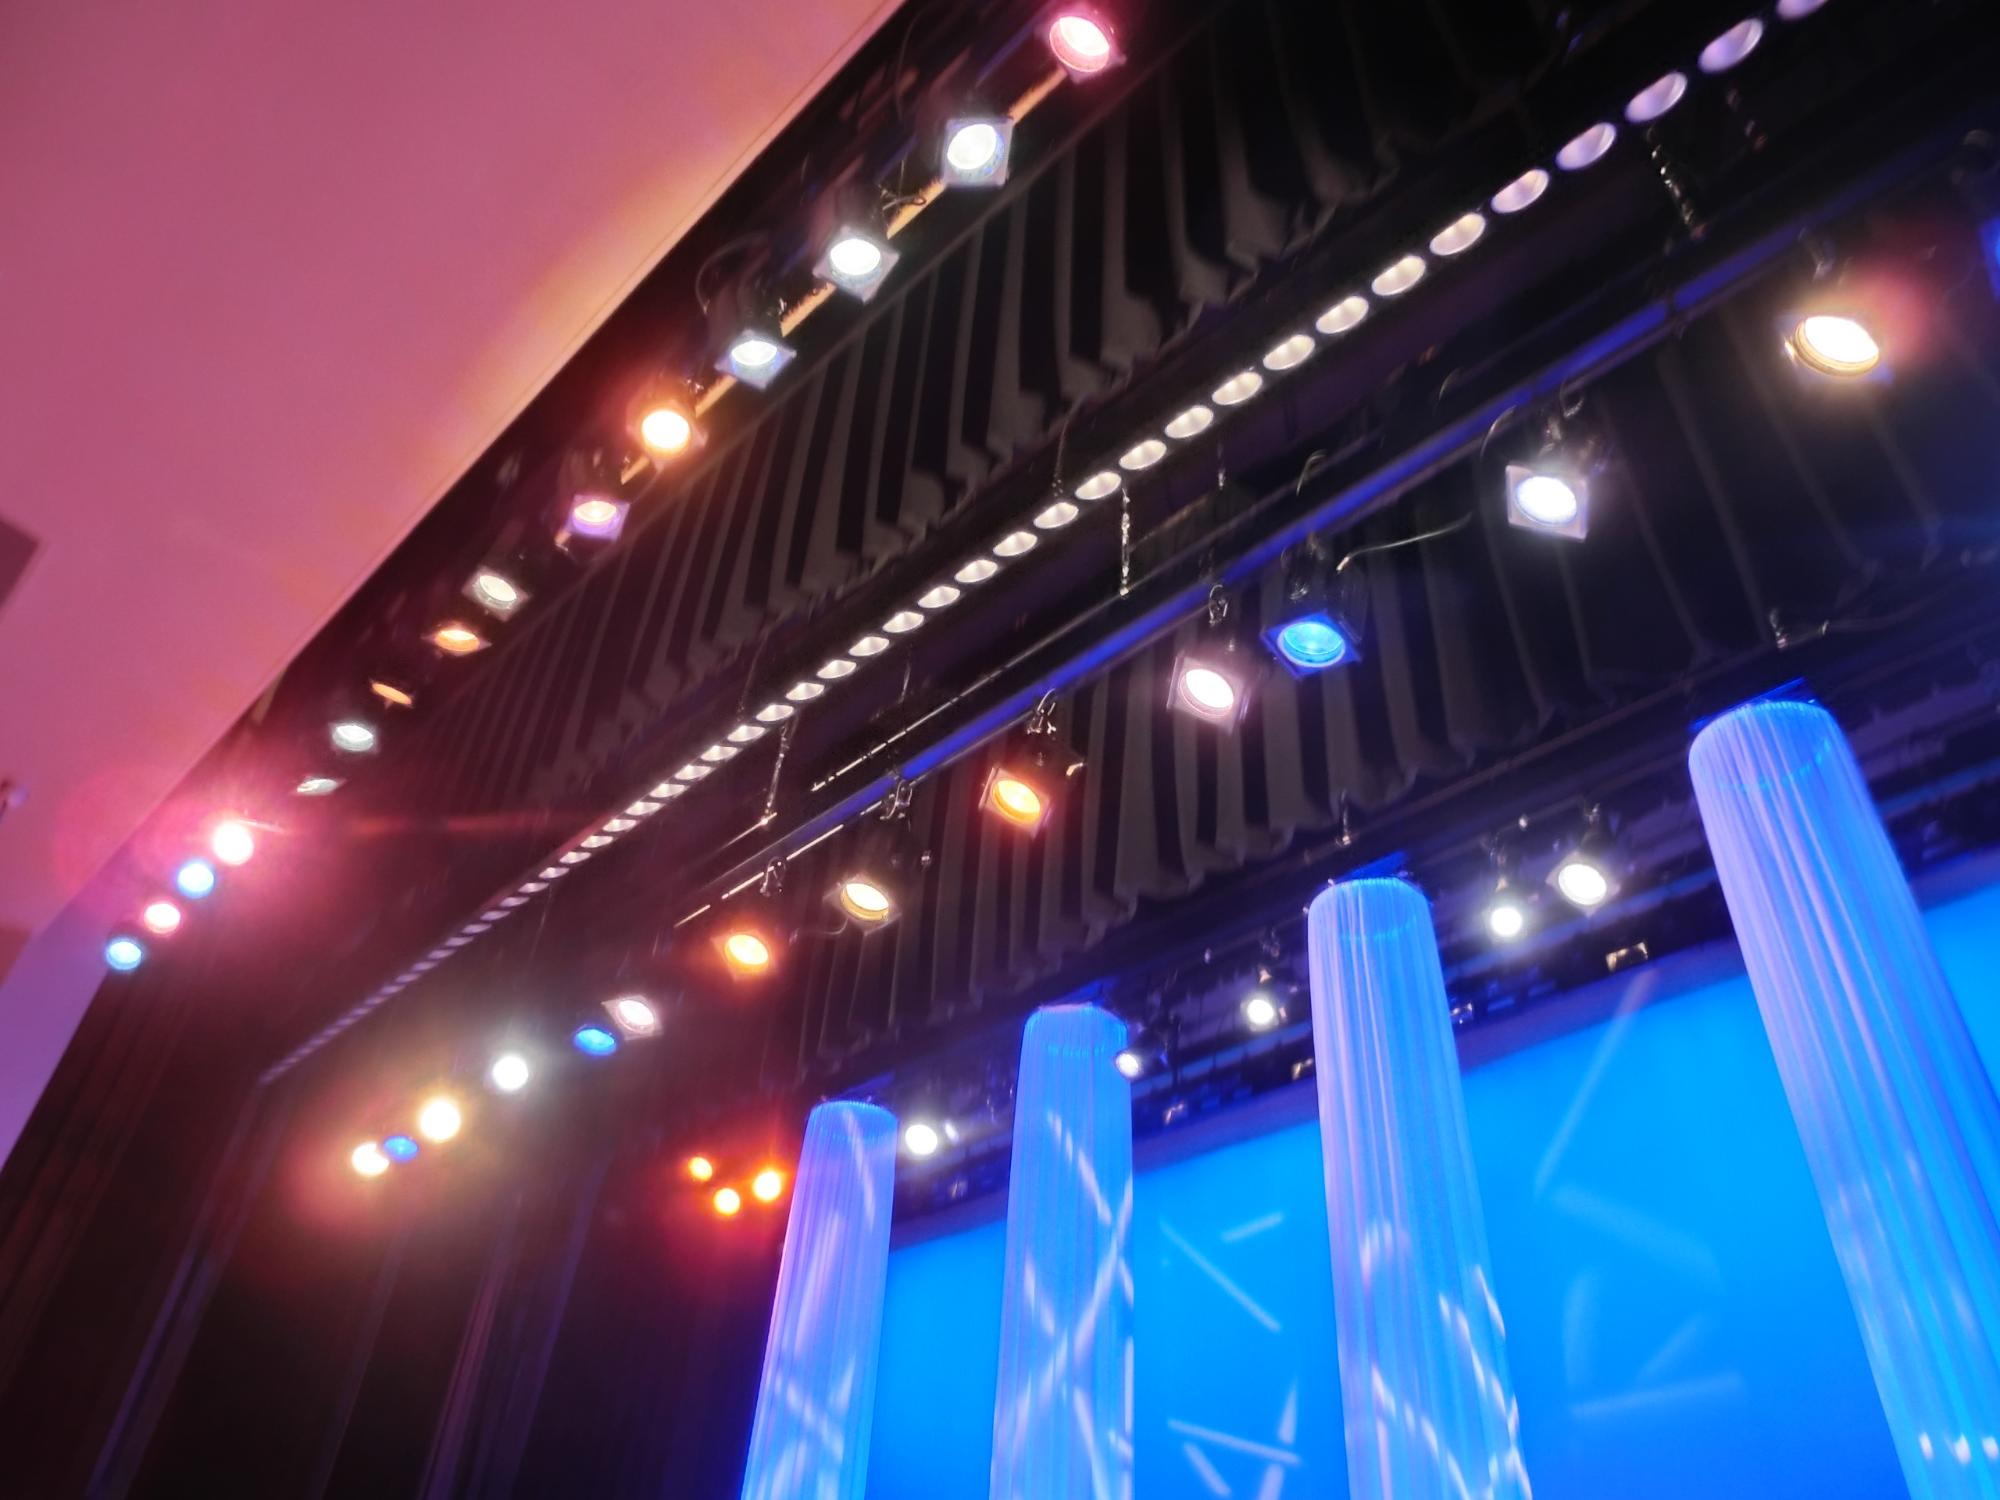 天井幕の間に設置された照明が水色に模様が入った演出をしている大ホールの舞台の写真